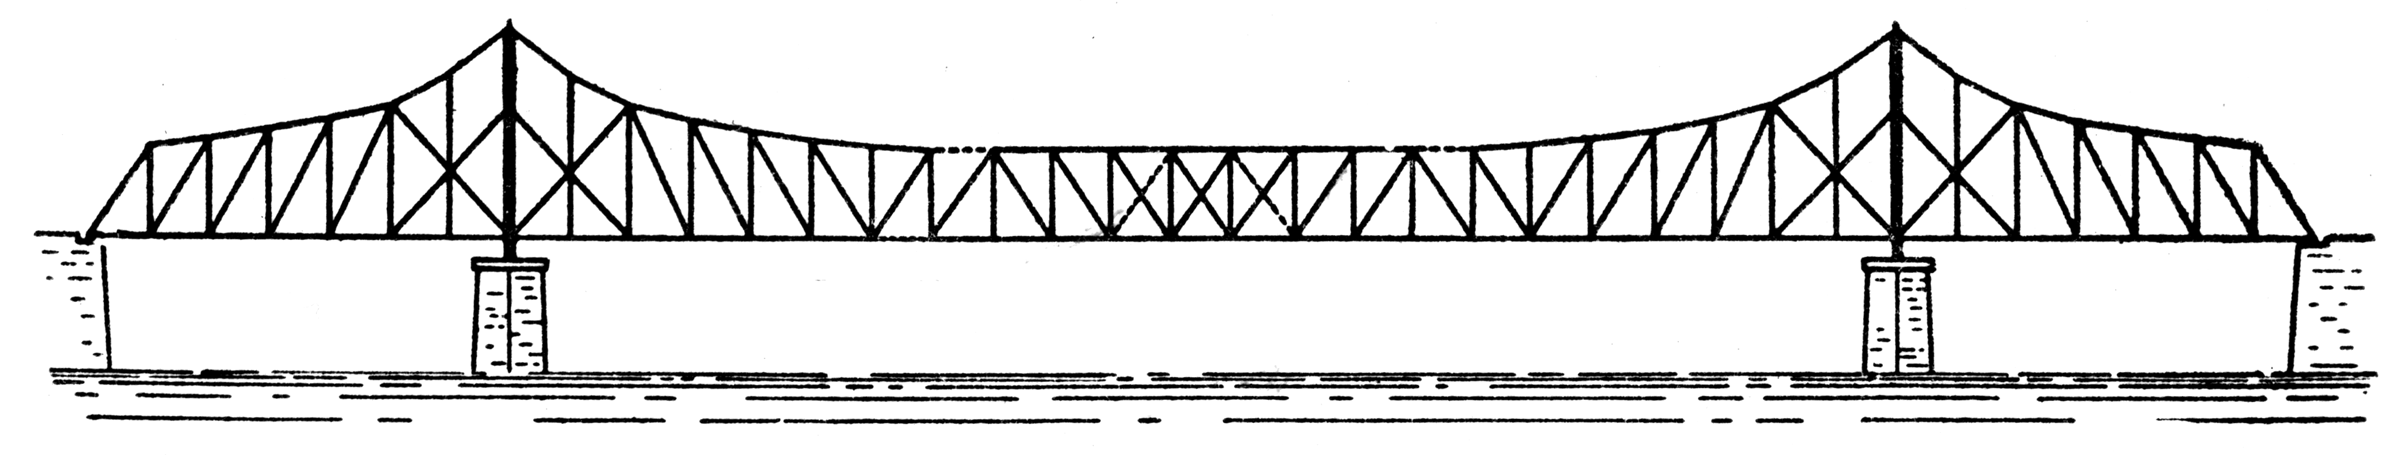 Bridge Cantileaver With Suspension Span   Clipart Etc